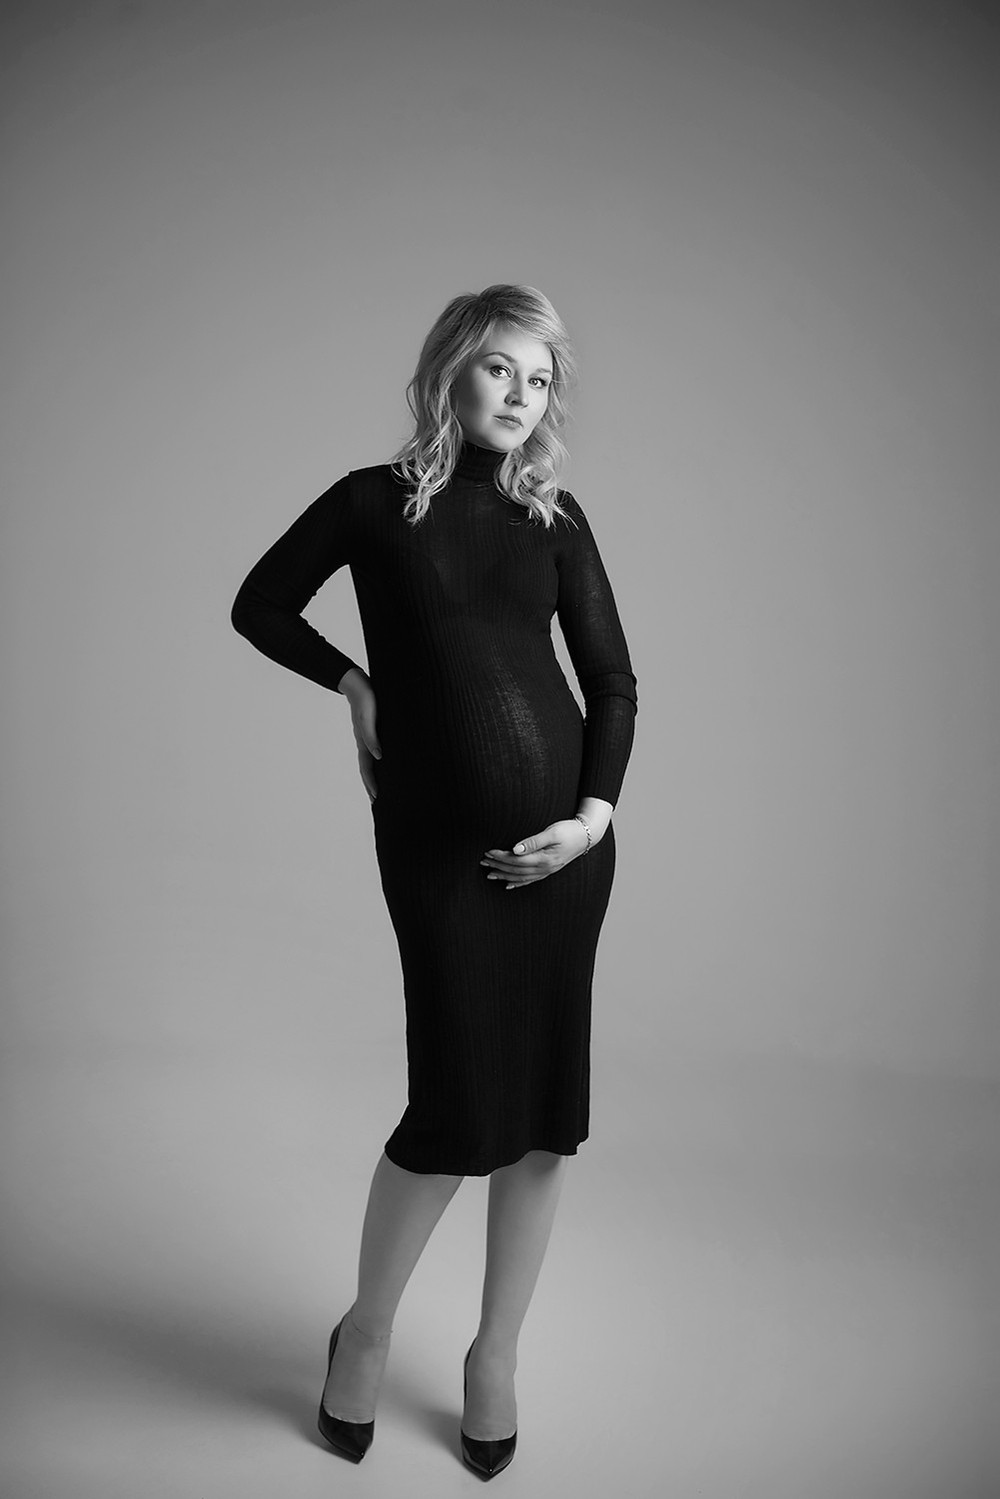 фотосессия, фотограф, беременности, циклорама, в стиле вог, vogue, черно белое фото